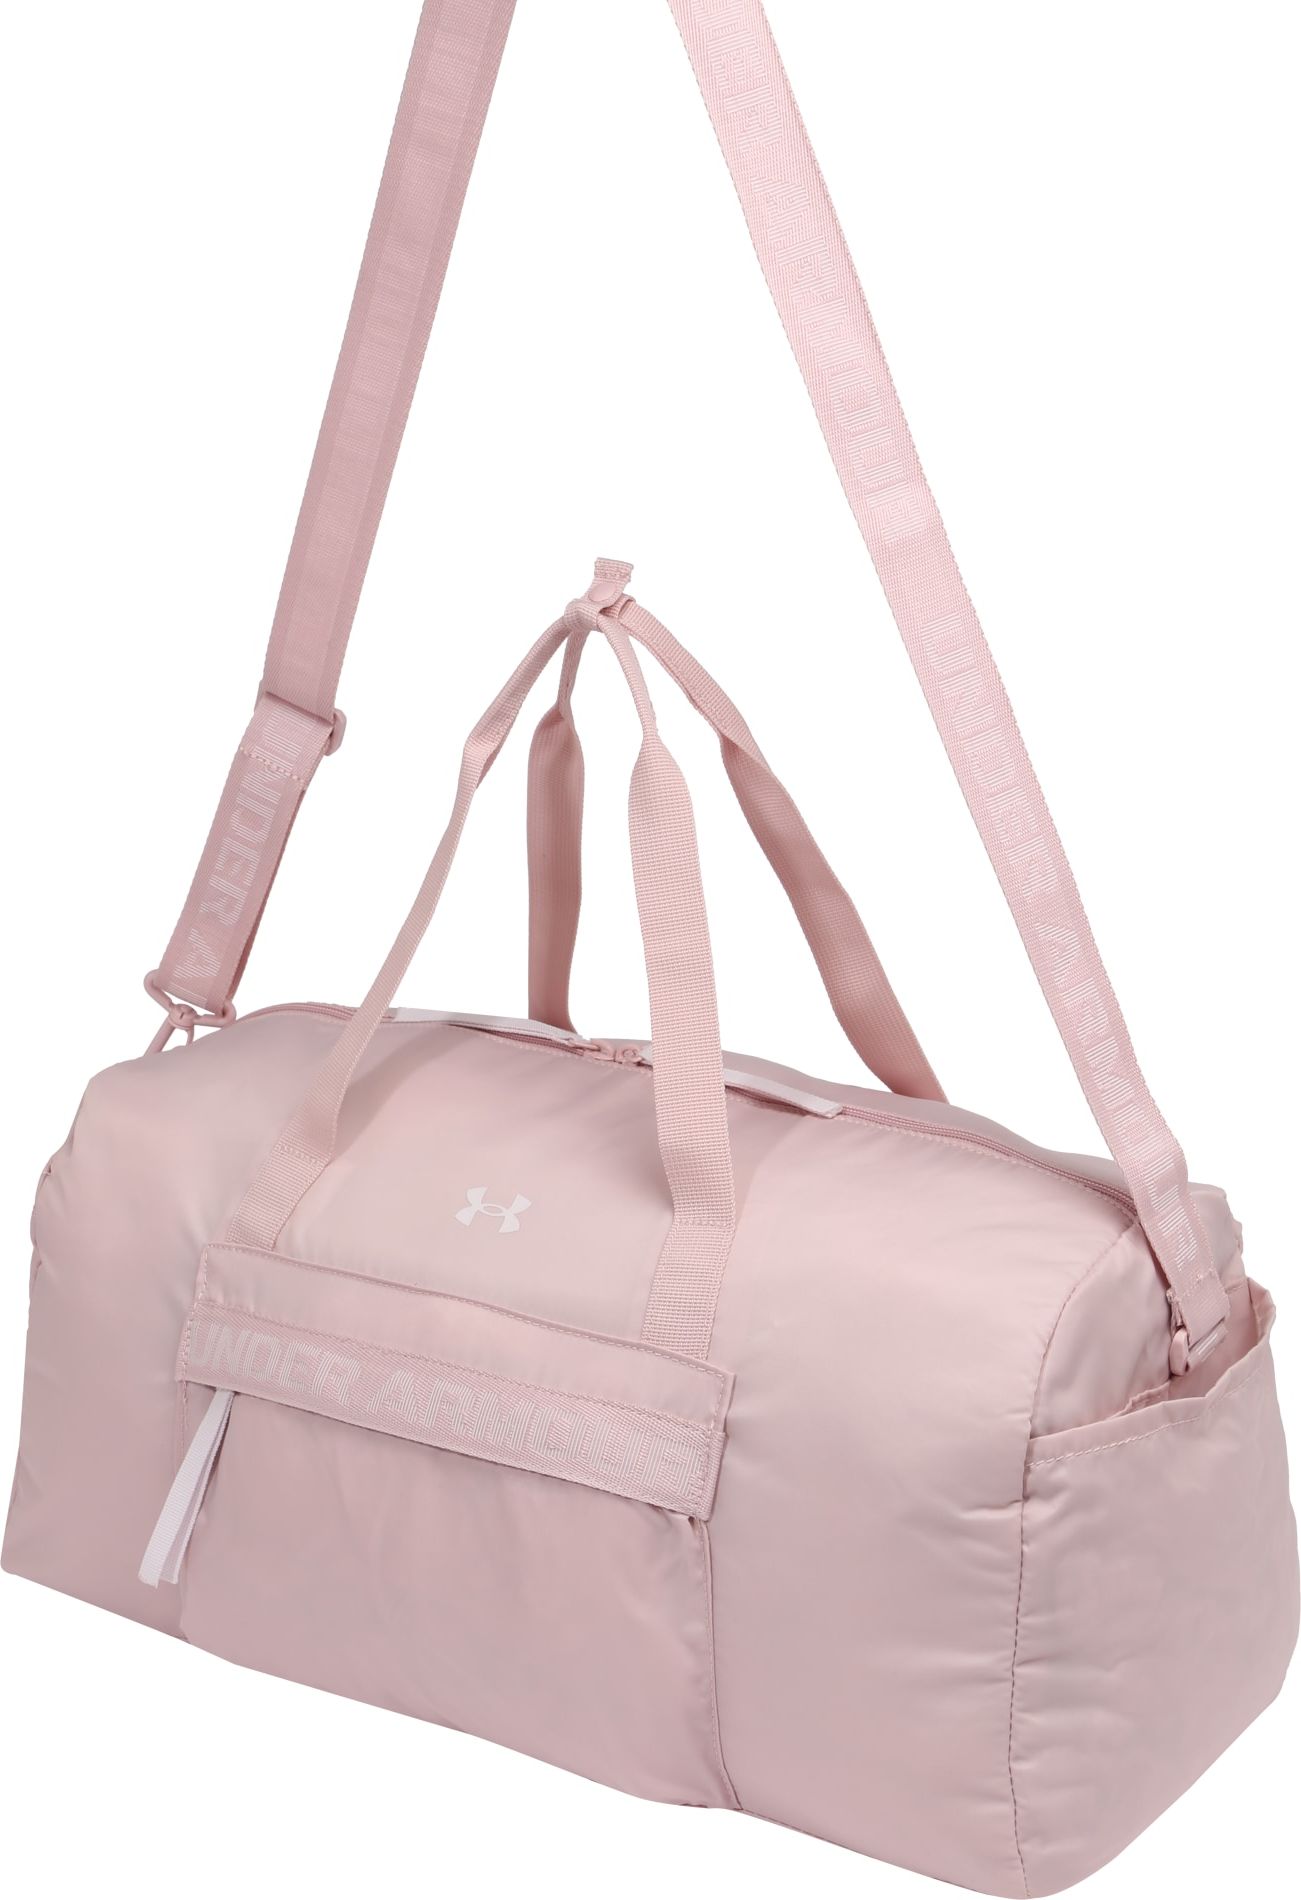 UNDER ARMOUR Sportovní taška 'Favorite' bílá / pink